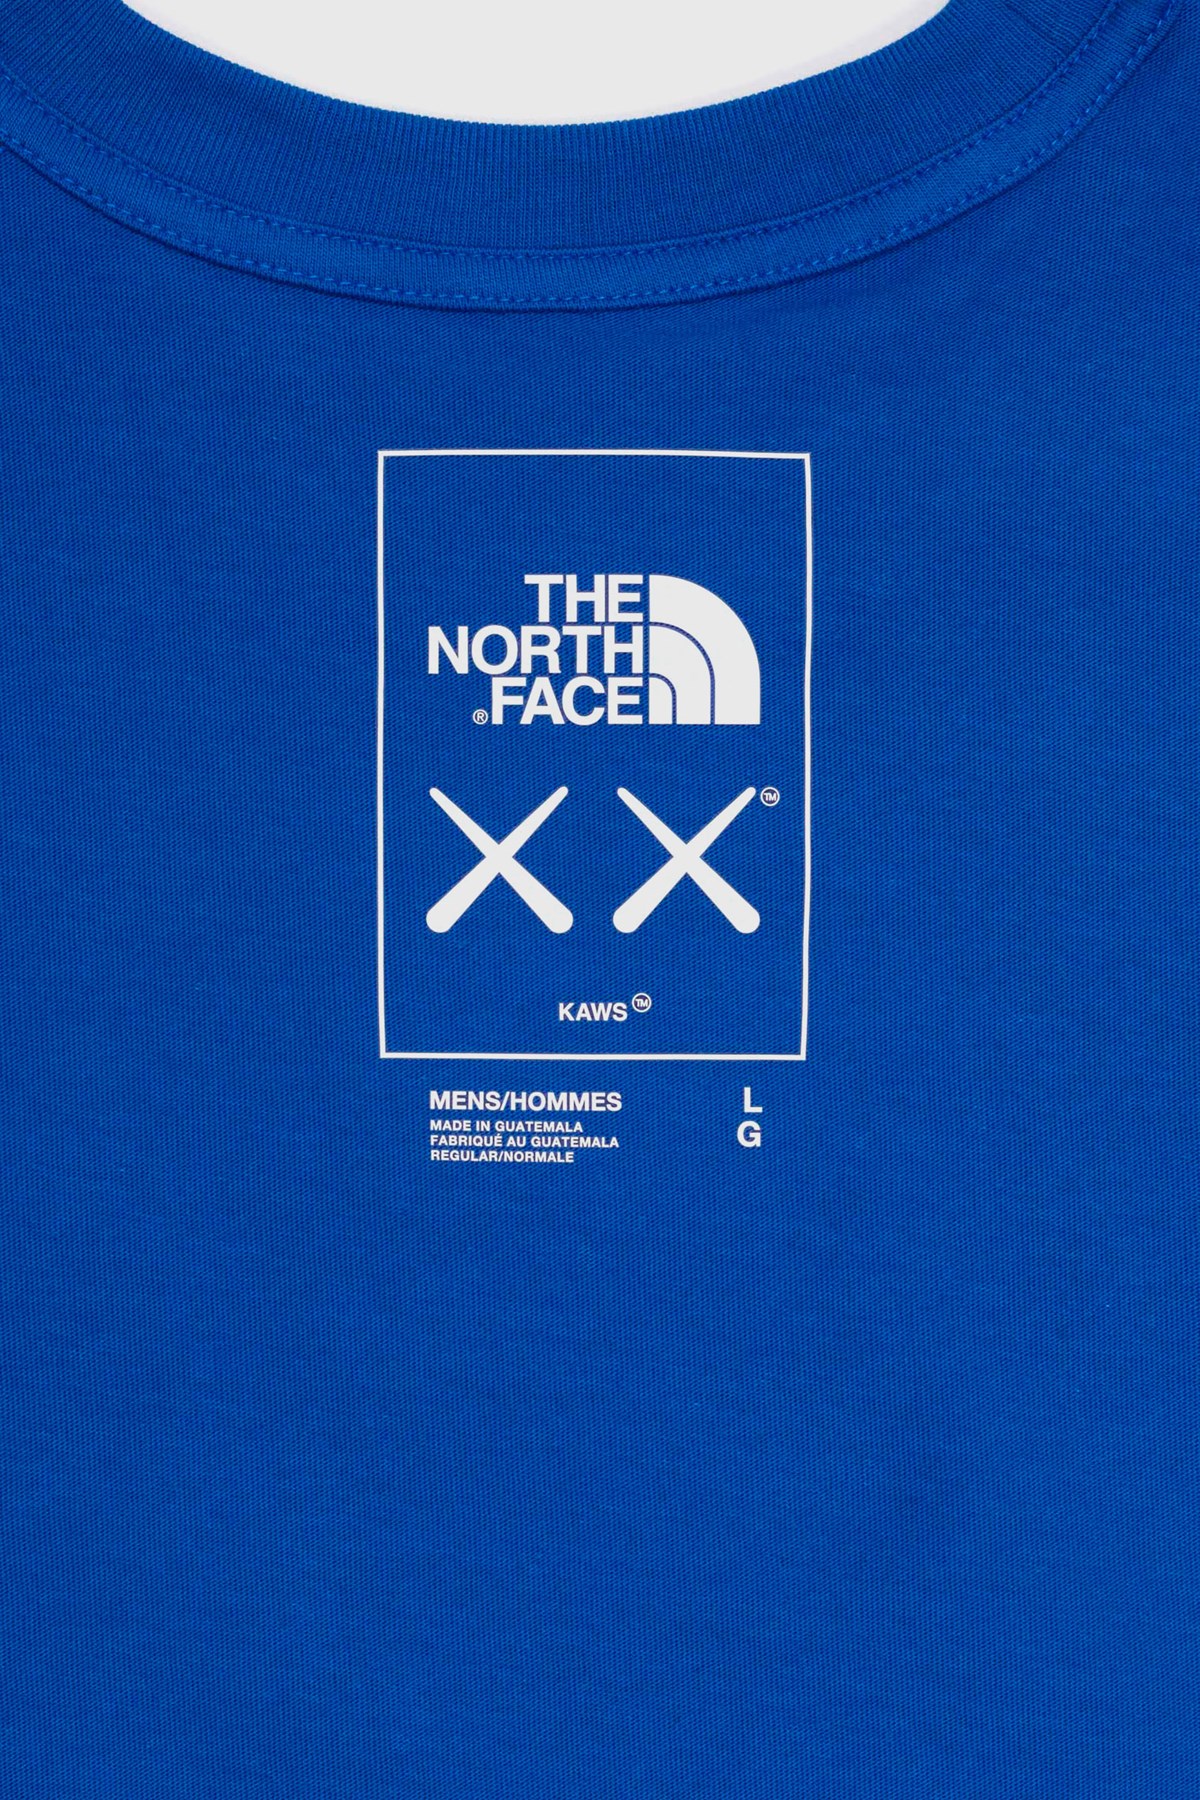 THE NORTH FACE XX KAWS TEE  BOLT BLUE